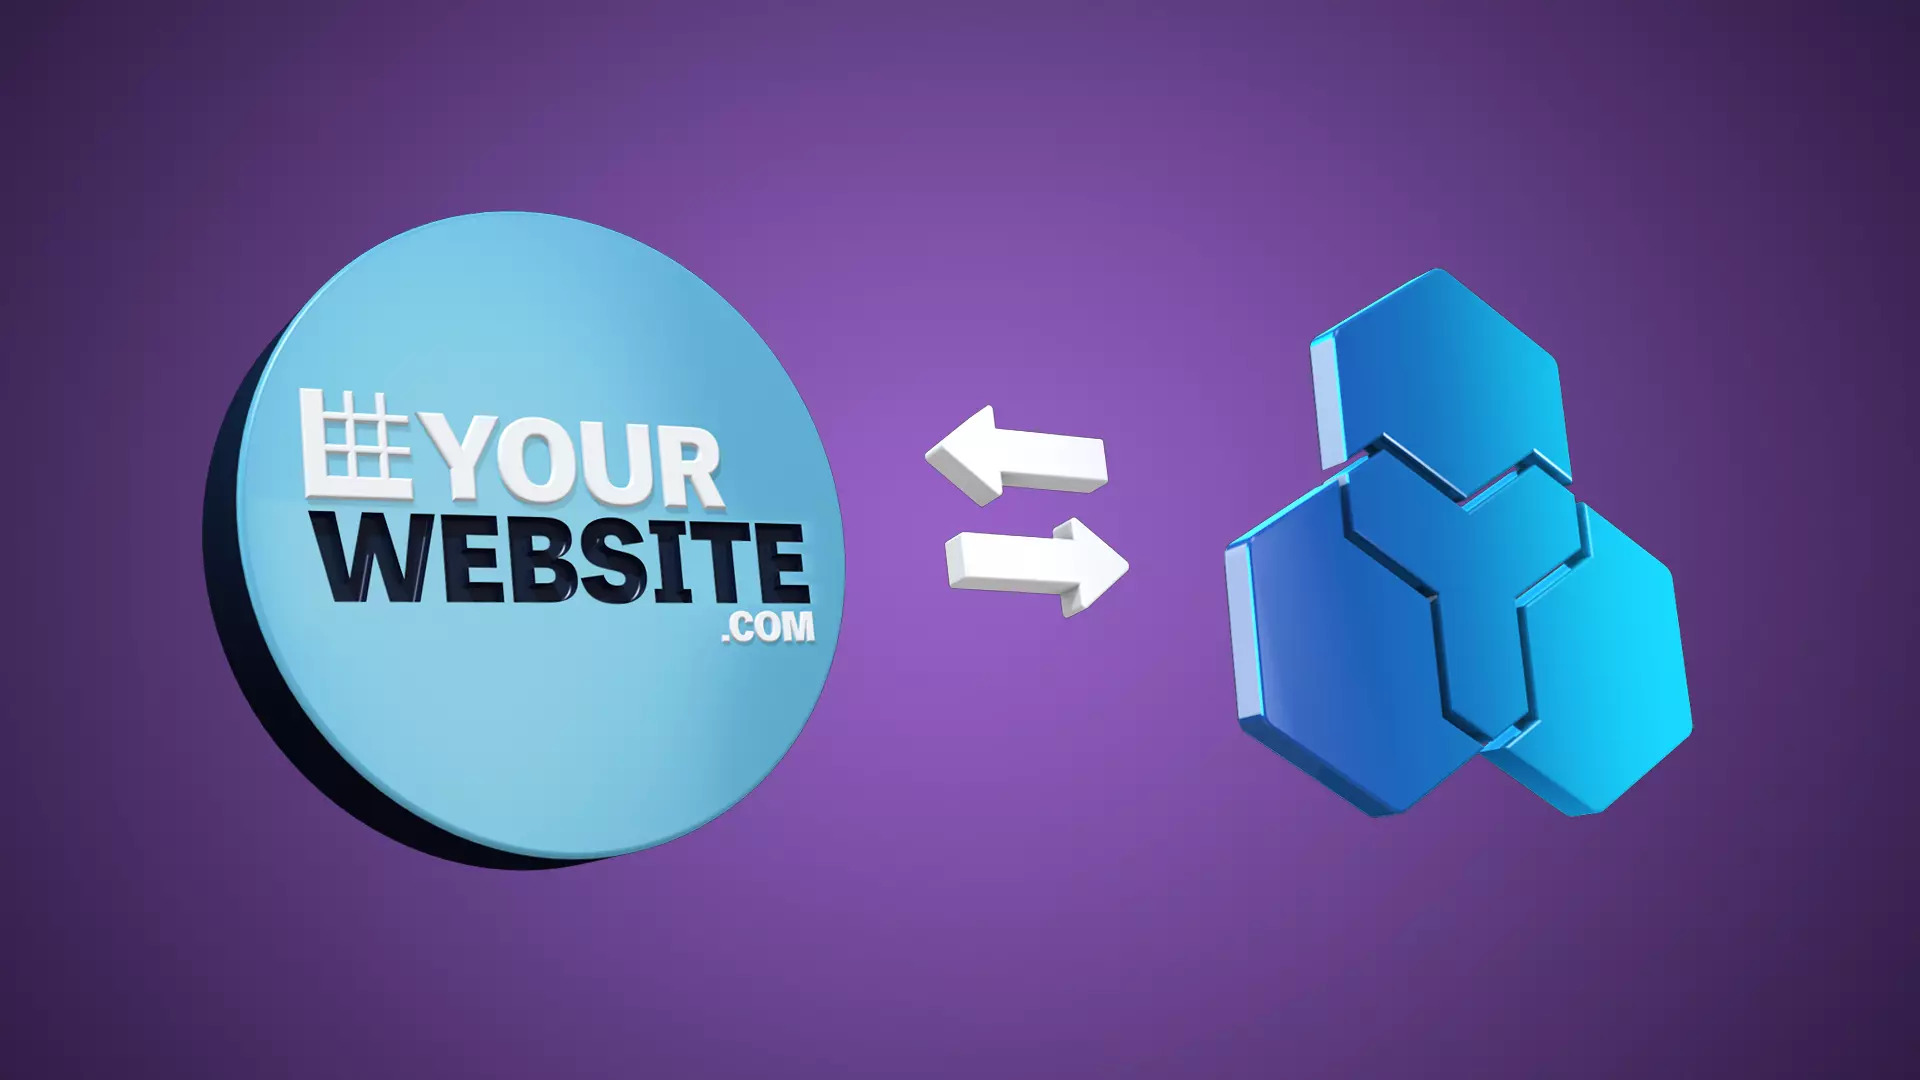 Helcim's and your website.com logo